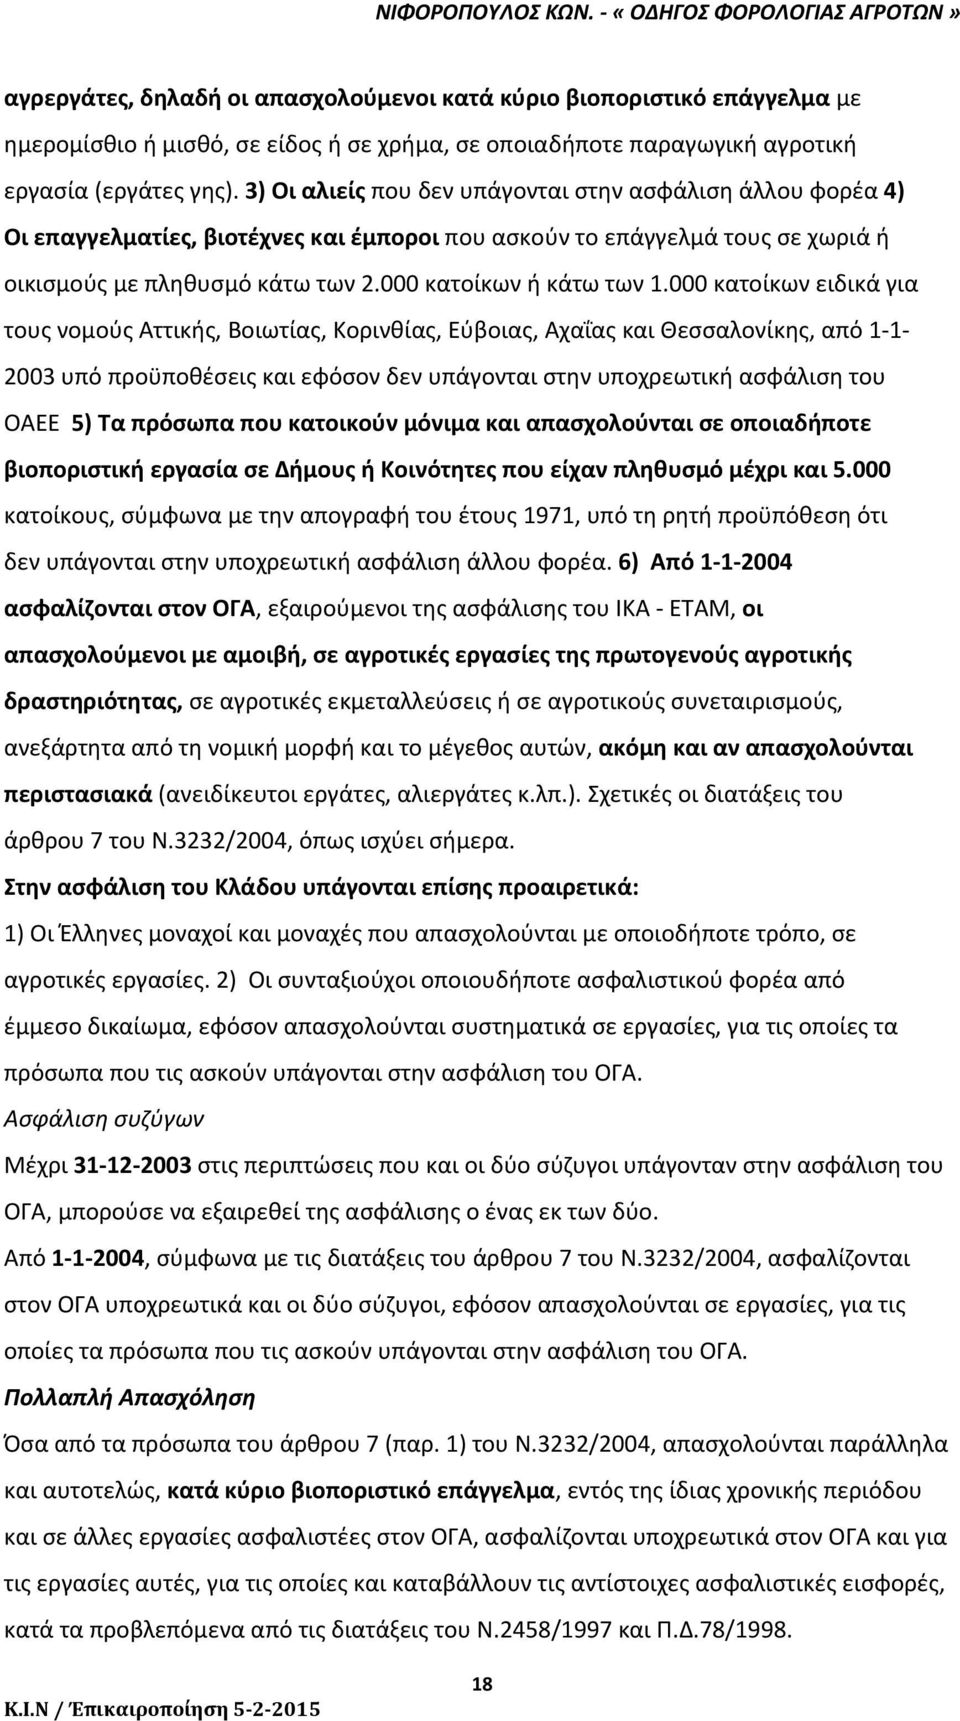 000 κατοίκων ειδικά για τους νομούς Αττικής, Βοιωτίας, Κορινθίας, Εύβοιας, Αχαΐας και Θεσσαλονίκης, από 1 1 2003 υπό προϋποθέσεις και εφόσον δεν υπάγονται στην υποχρεωτική ασφάλιση του ΟΑΕΕ 5) Τα